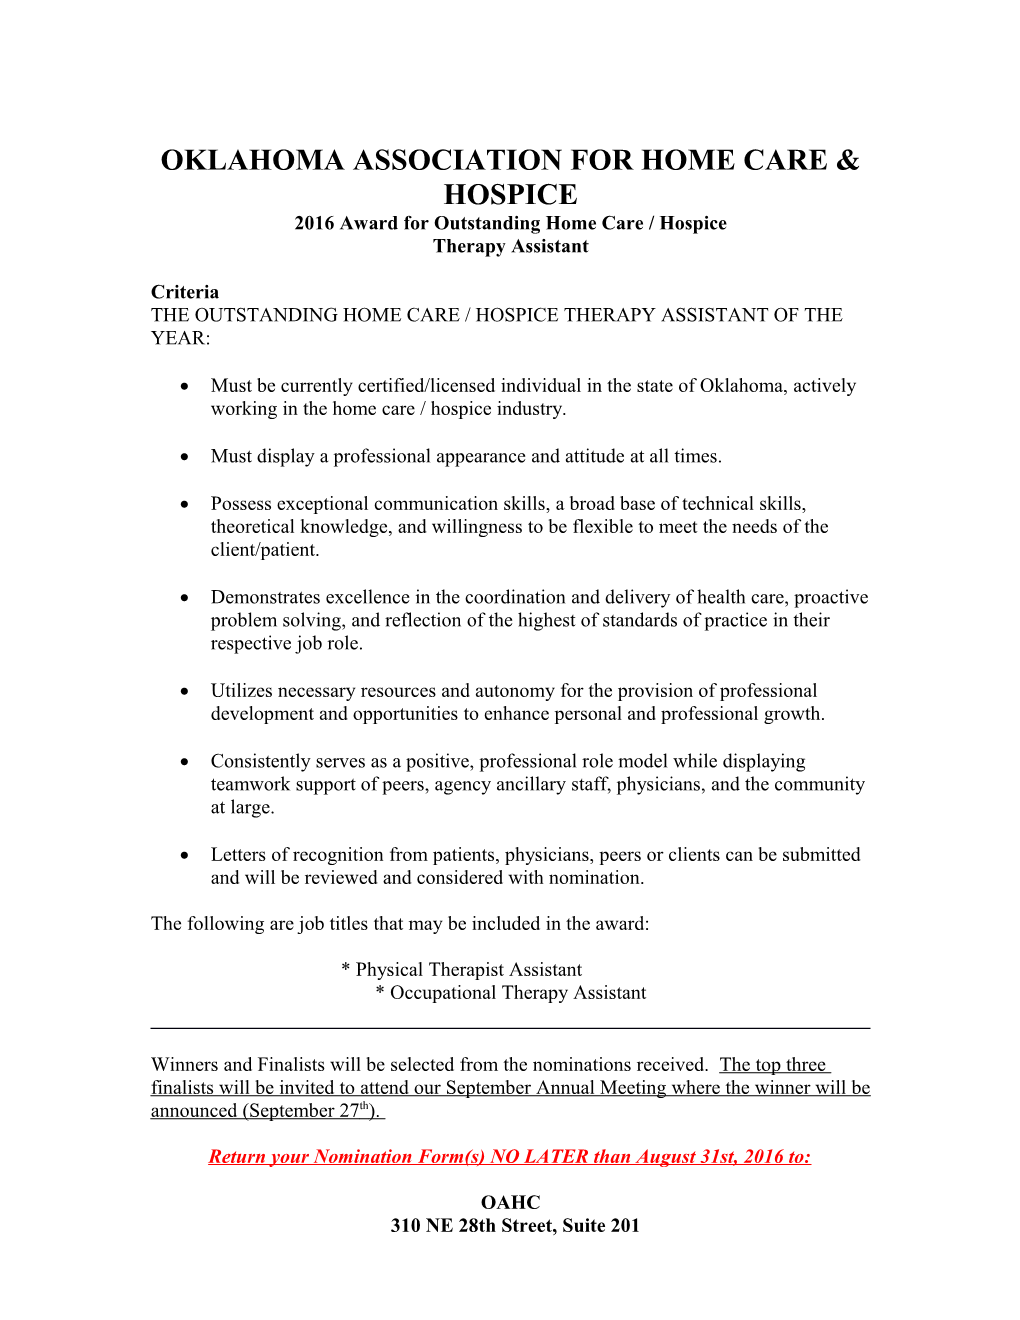 Oklahoma Association for Home Care